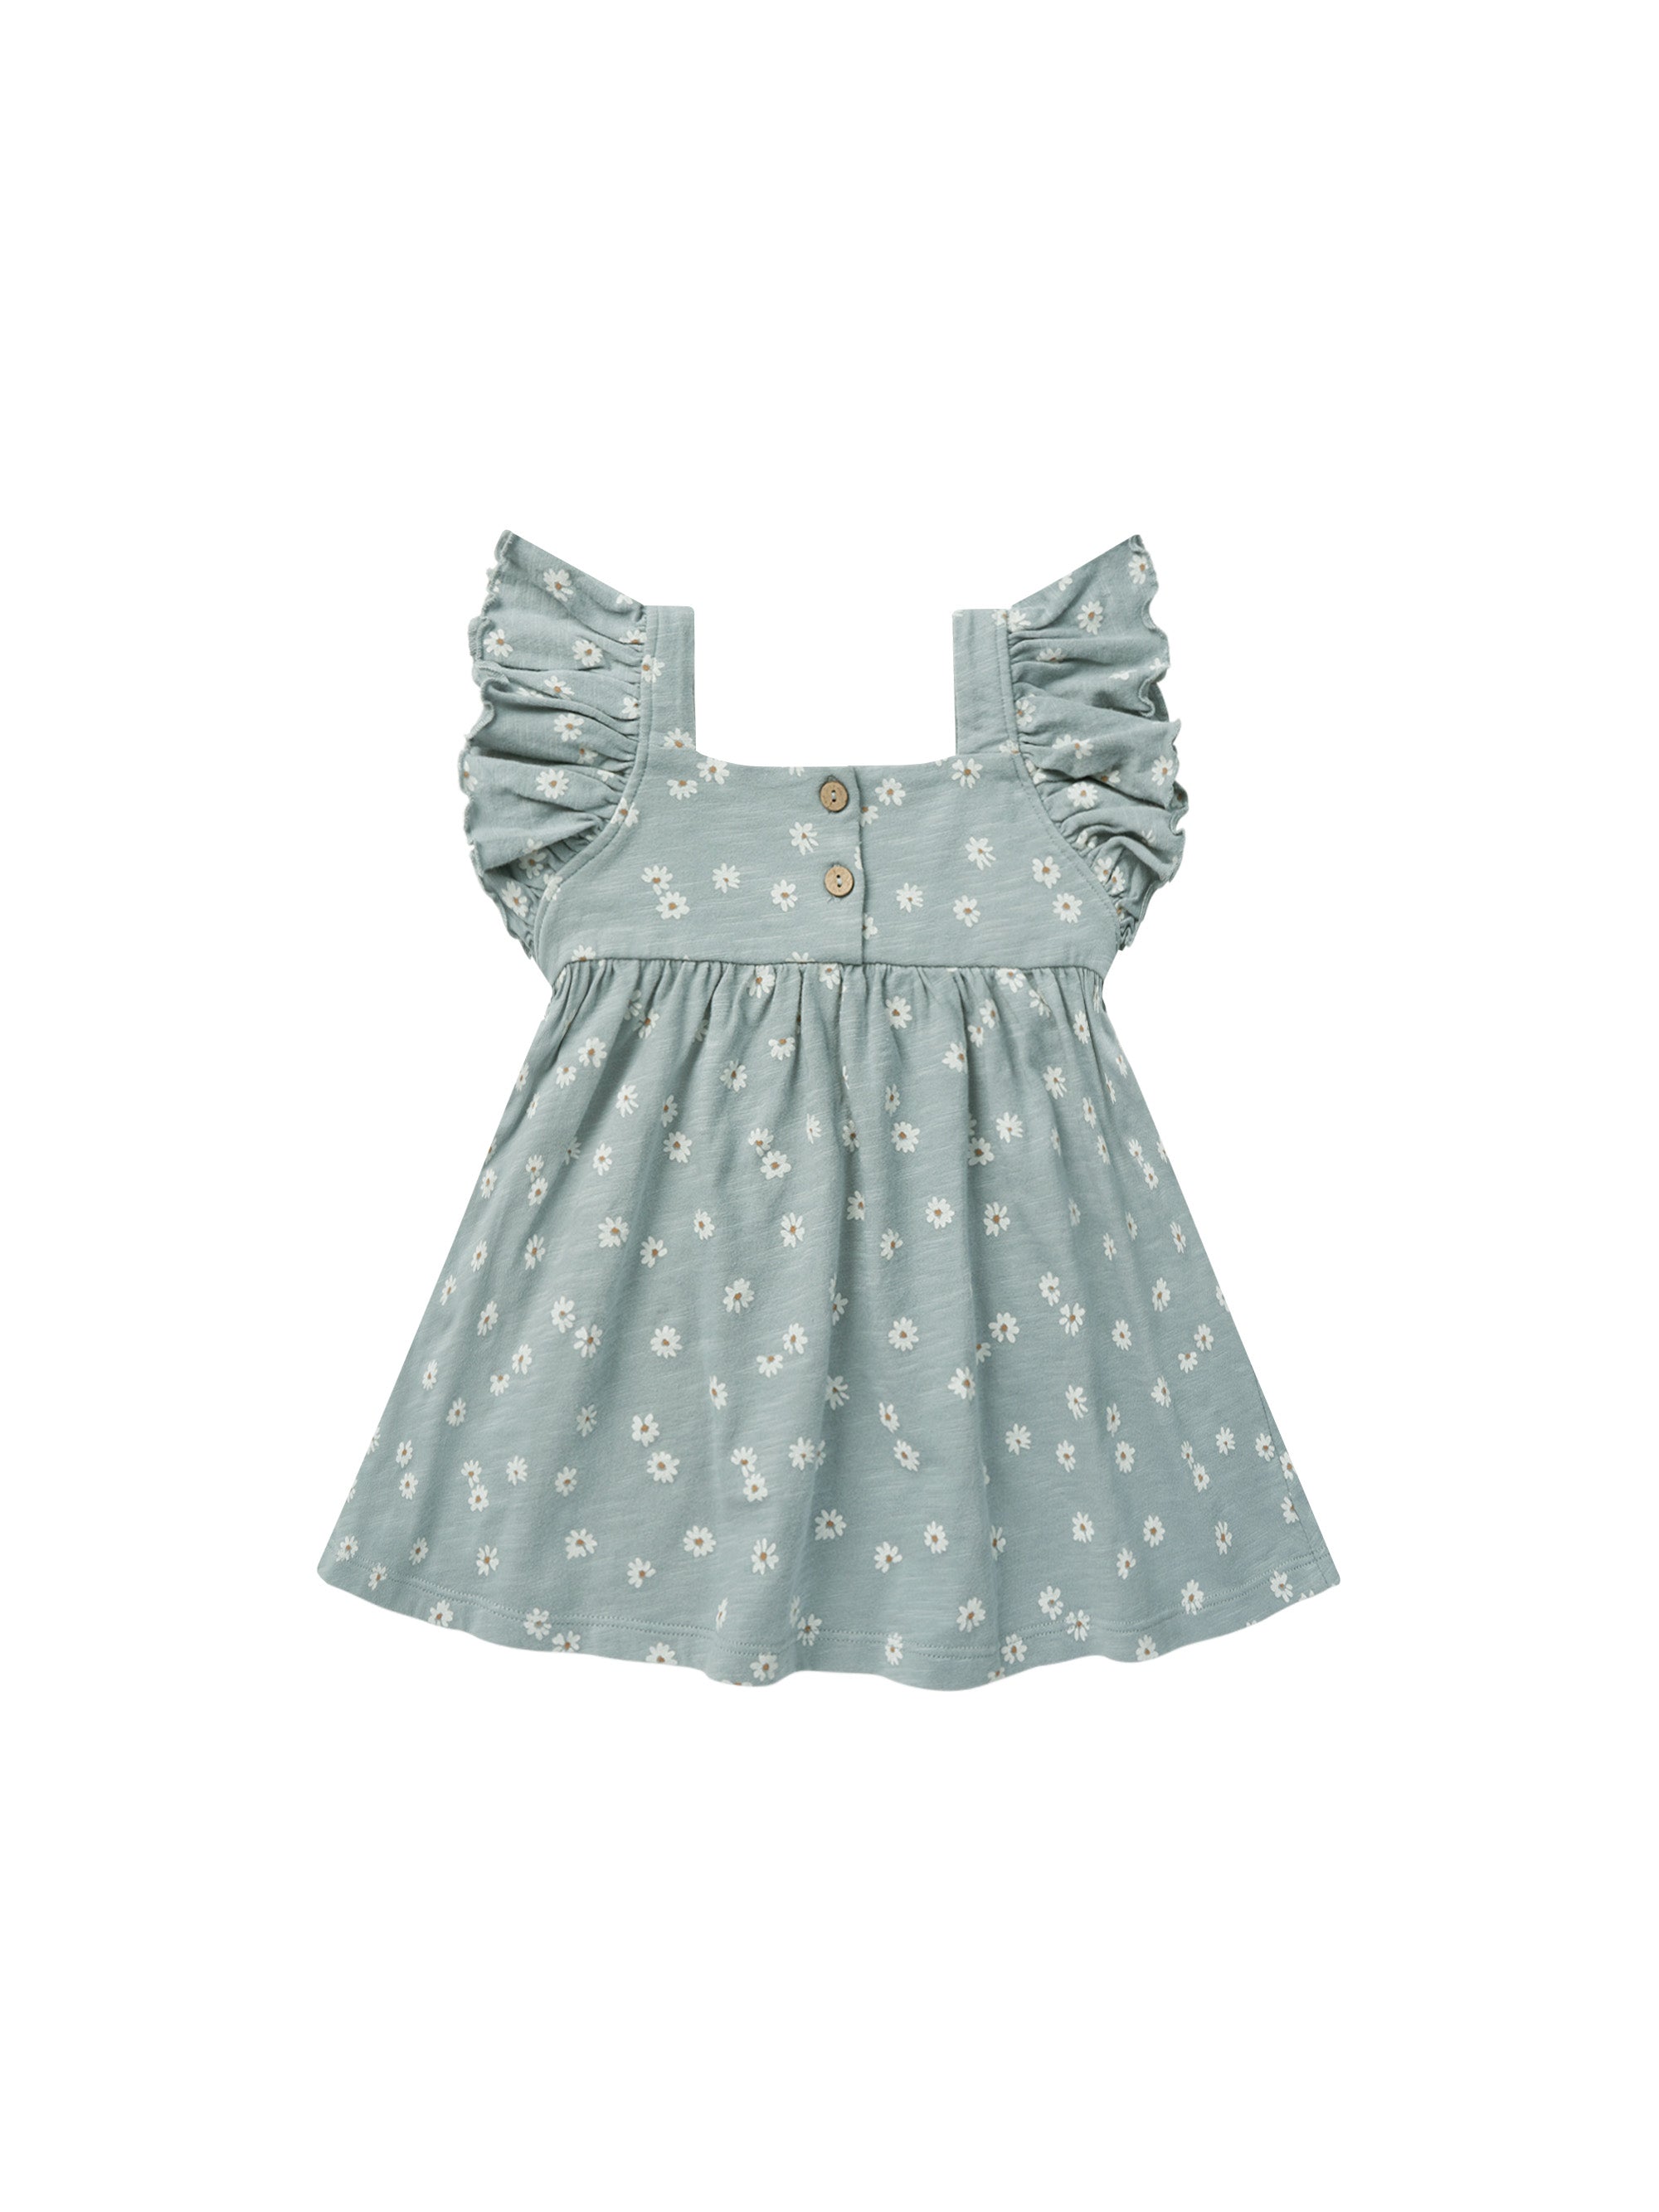 Mariposa Dress - Blue Daisy - Twinkle Twinkle Little One